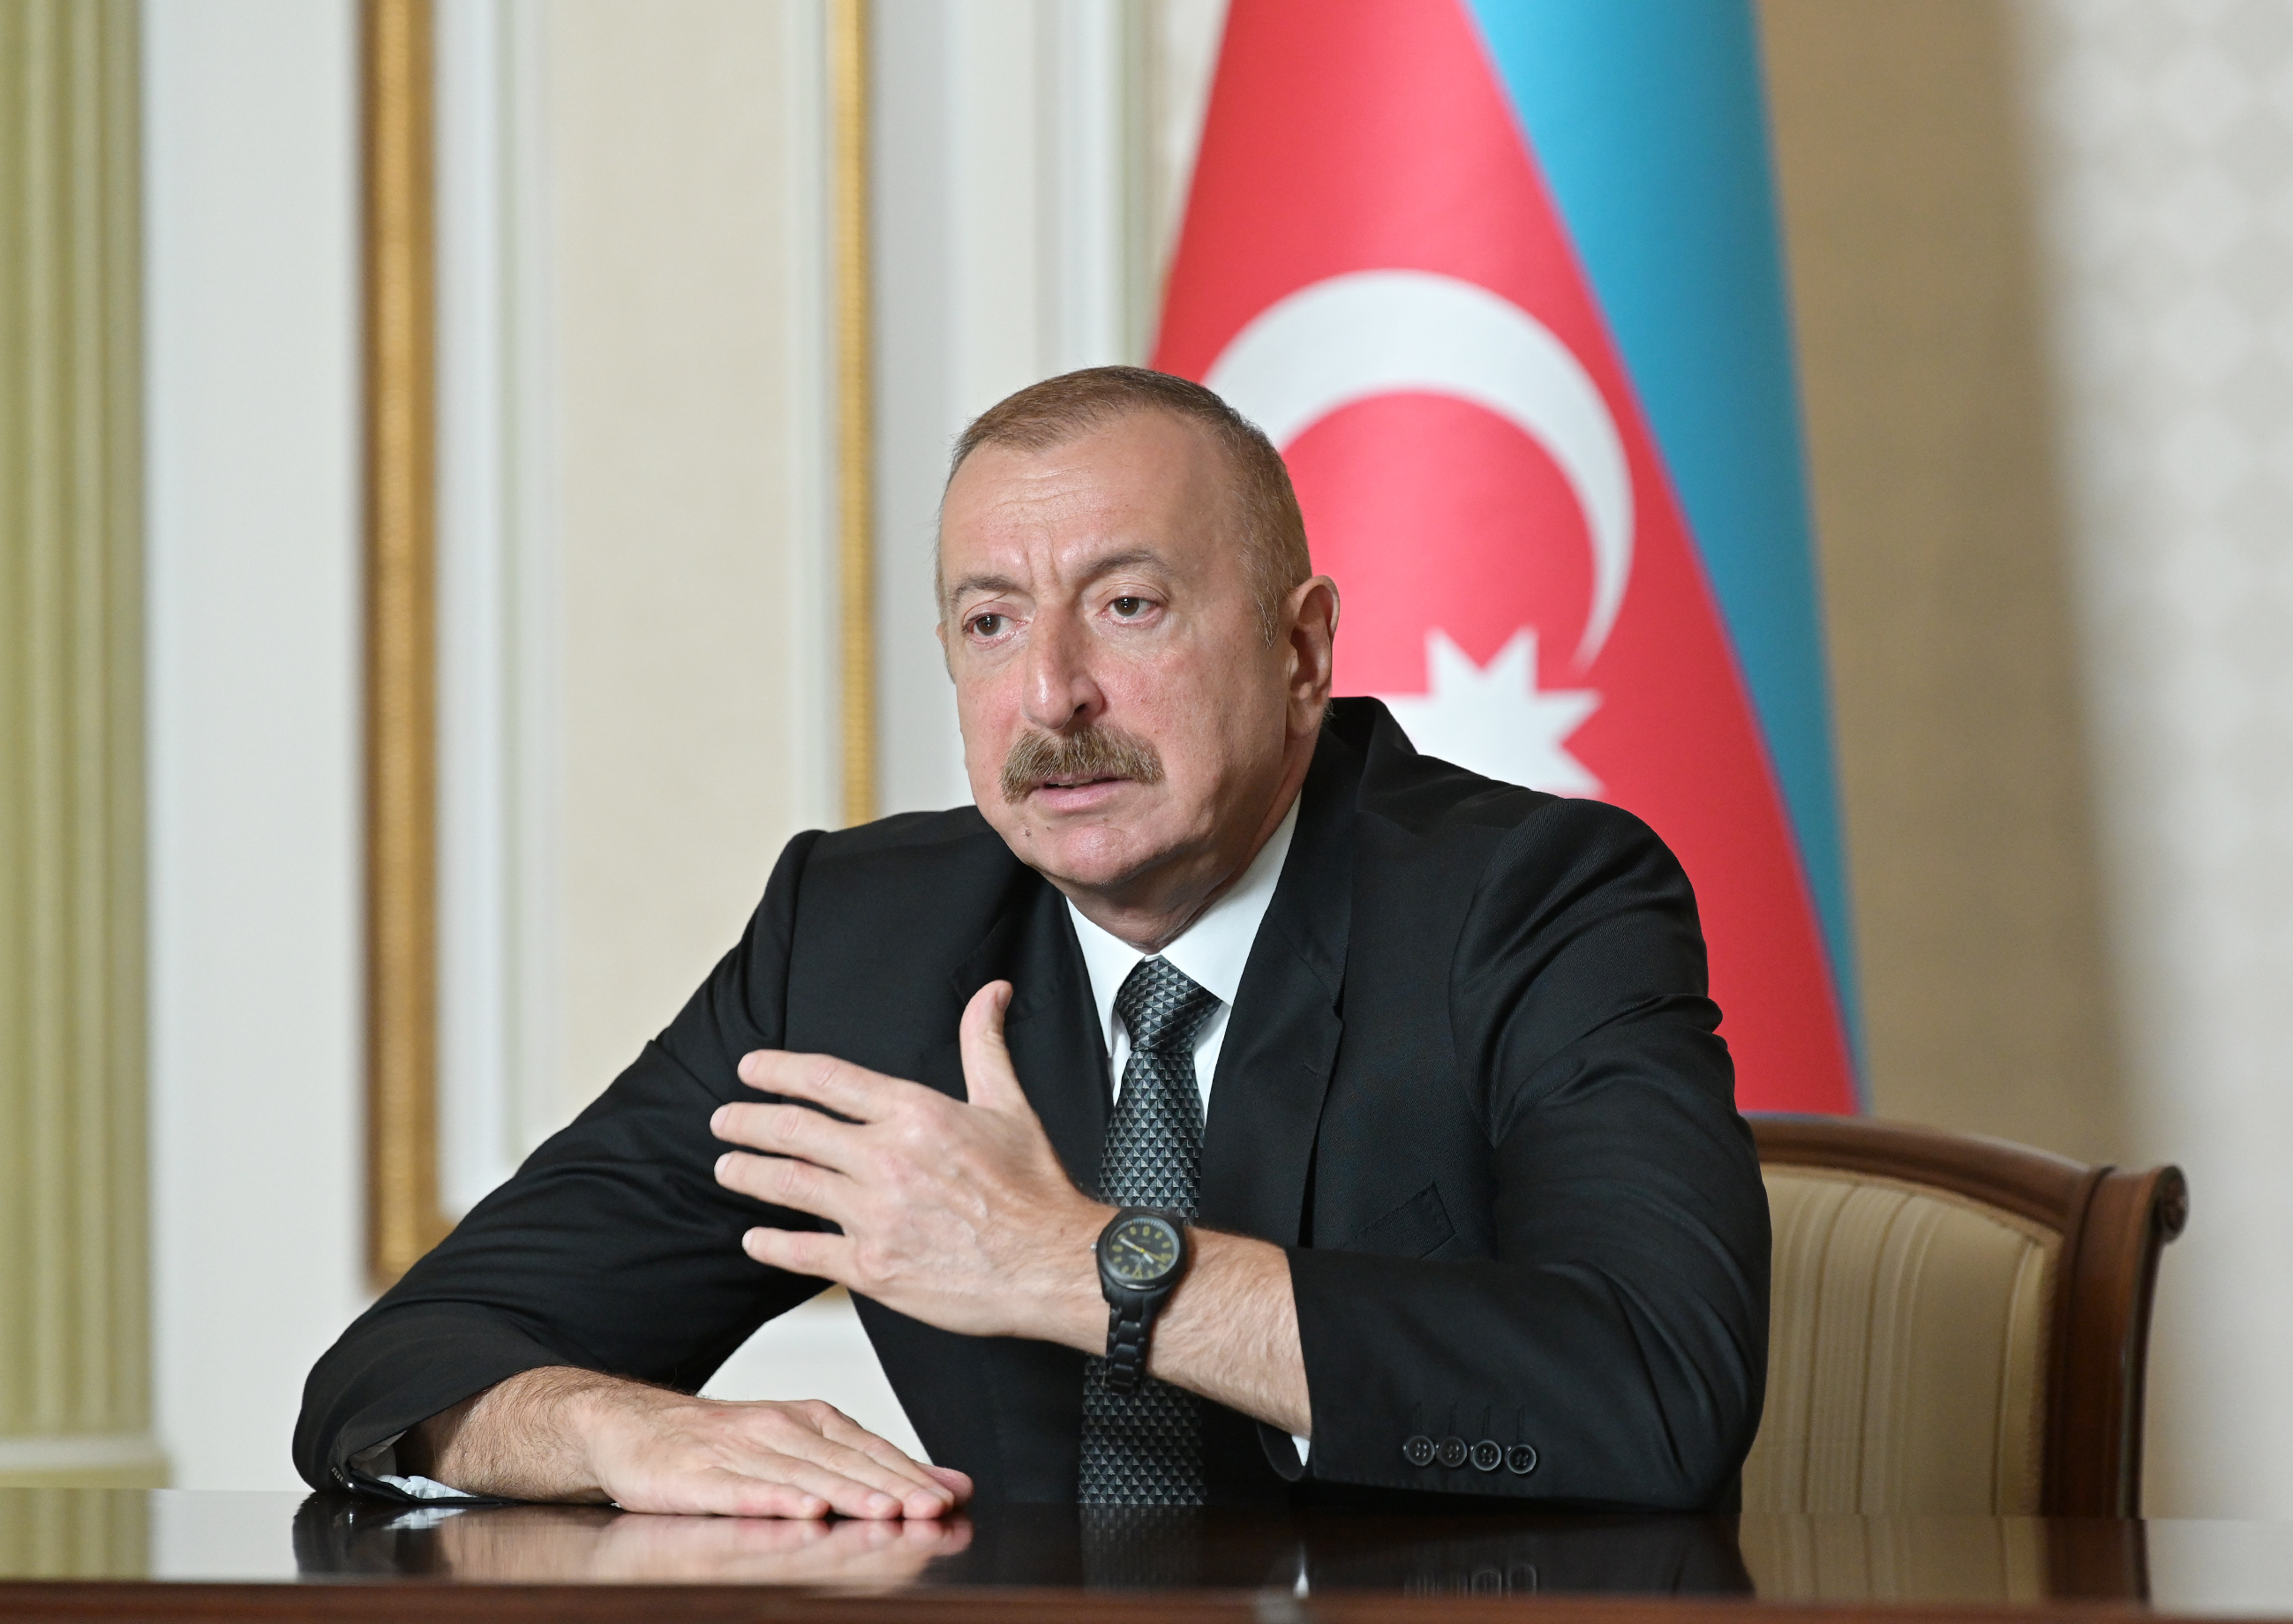 Azərbaycan Prezidenti iranlı nazirə erməni vəhşiliyini xatırlatdı: “Bunu öz gözlərinizlə görmüsünüz”